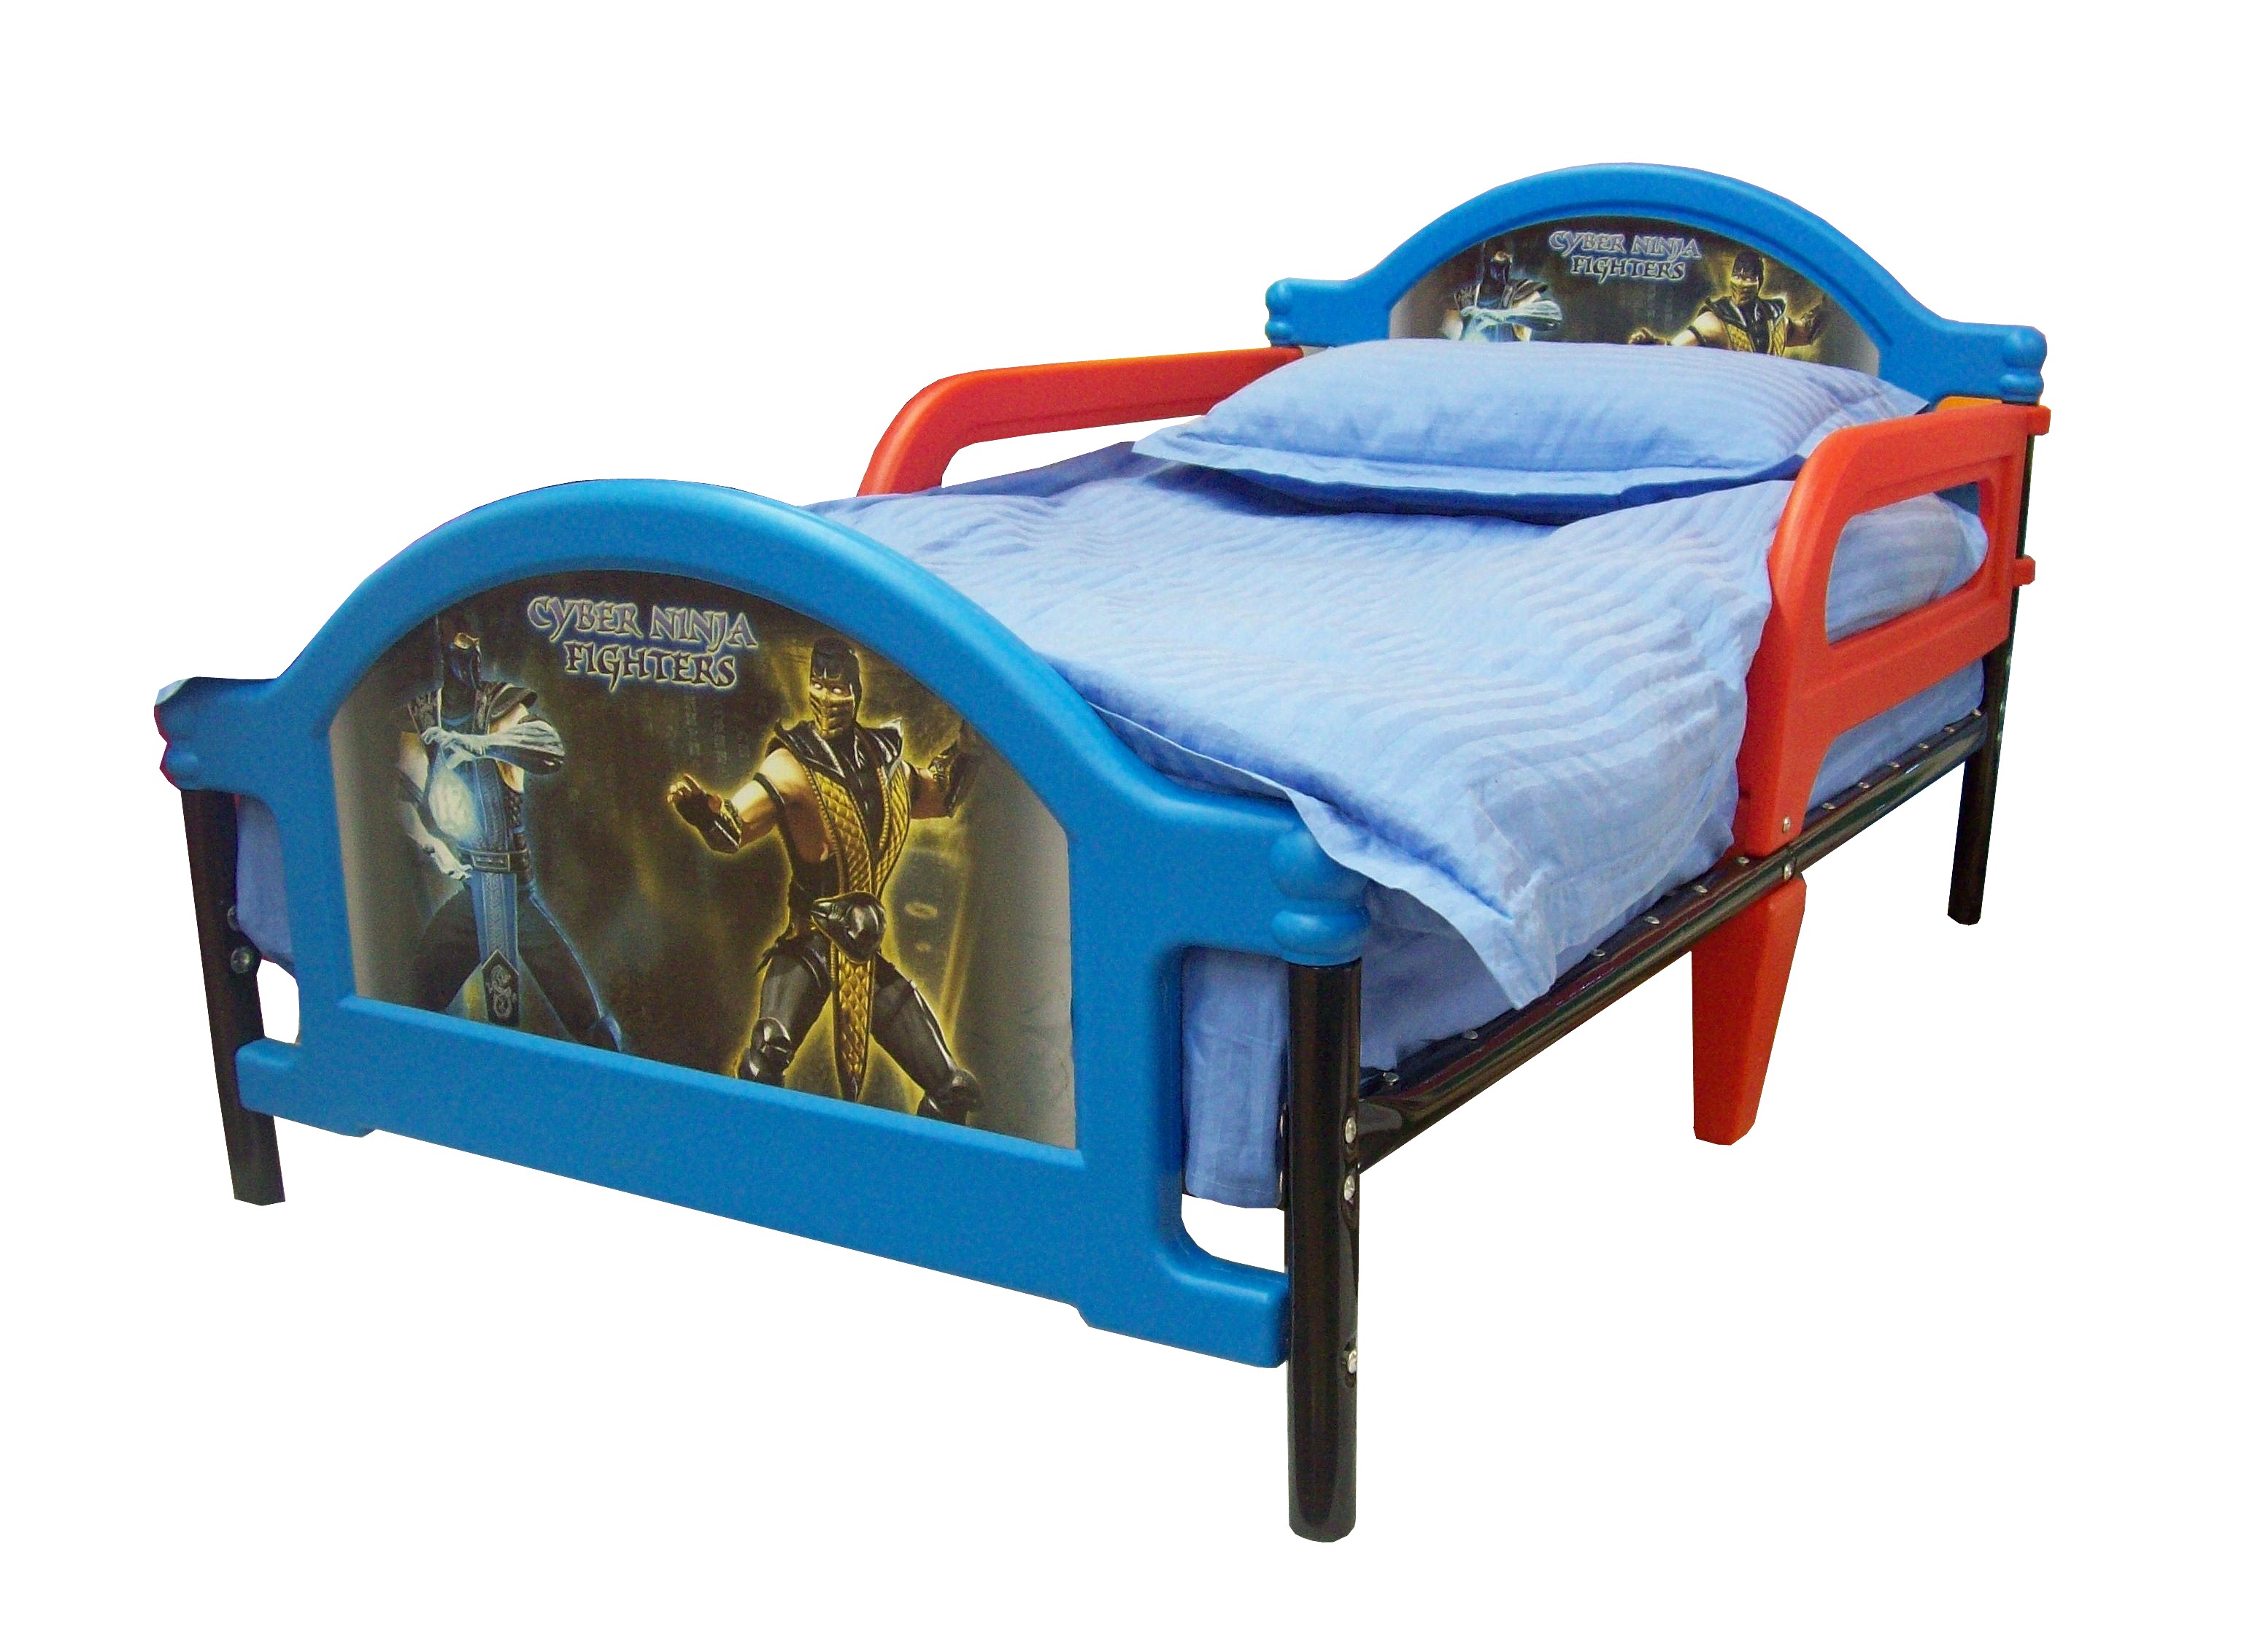 Детская кровать  Джуниор Cyber Ninja Fighters, кровать Кибервоины Ниндзя для дошкольника, от 1,5 до 6 лет, металл, пластик. Кровать с комплектом: постельное белье, одеяло, подушка., Самая безопасная детская кровать для дошкольник